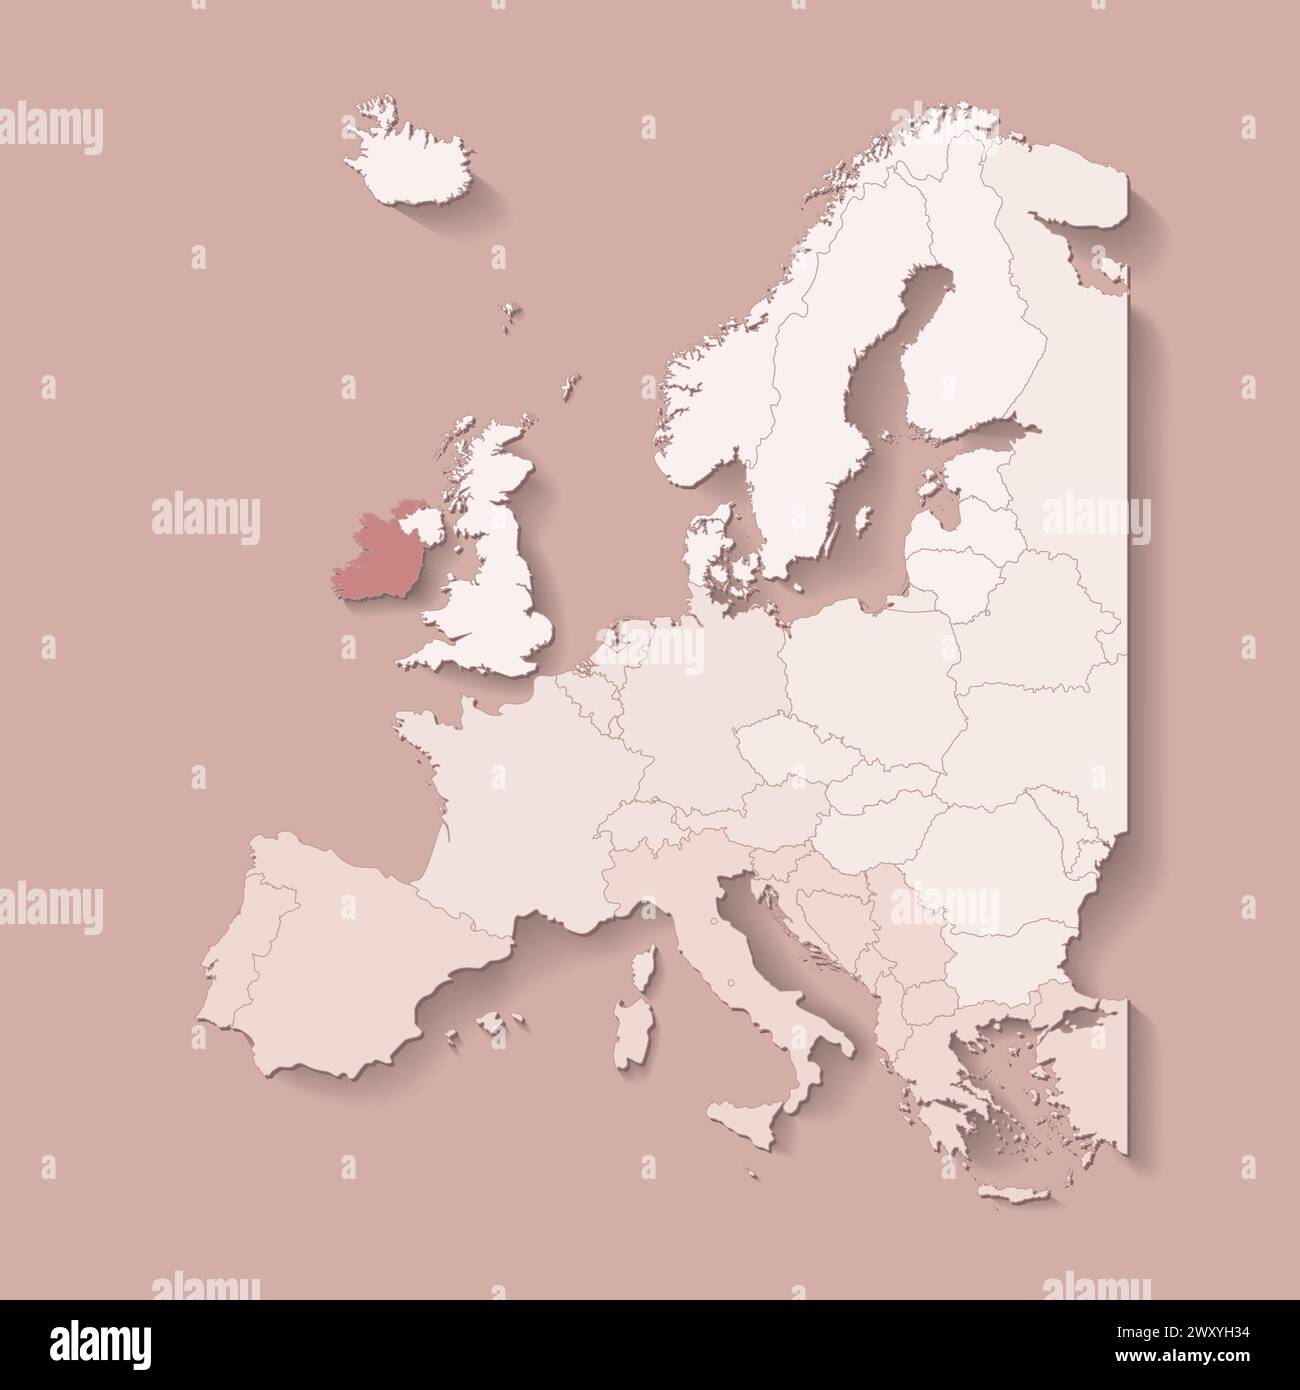 Illustrazione vettoriale con terra europea con confini di stati e paese contrassegnato Irlanda. Mappa politica di colore marrone con occidentale, sud e così via Illustrazione Vettoriale